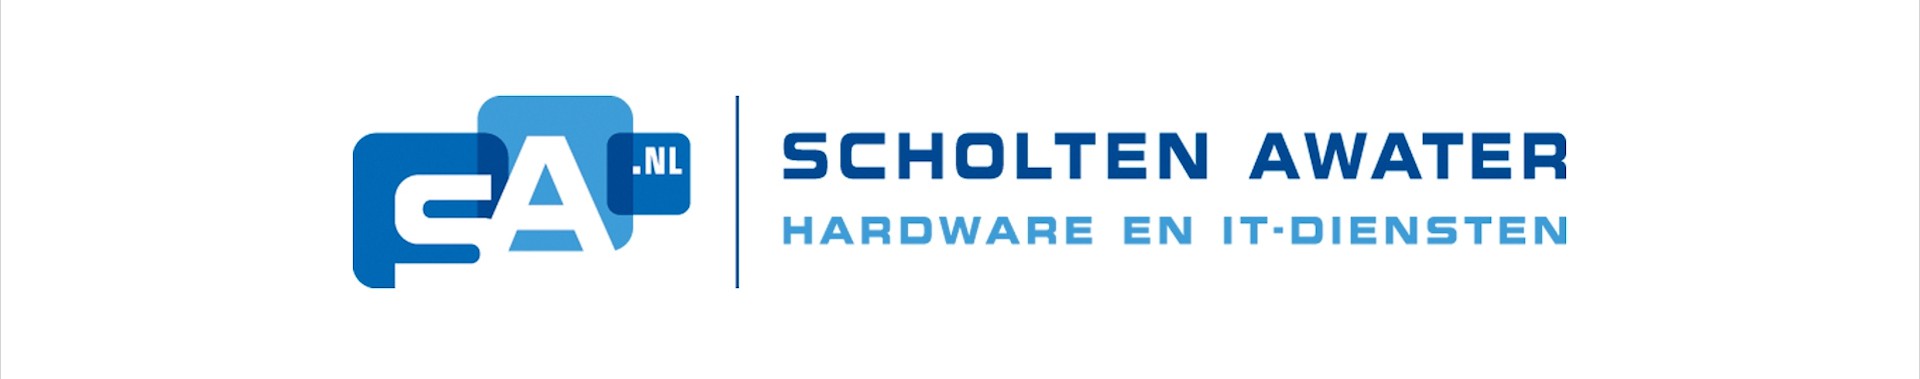 Scholten Awater logo